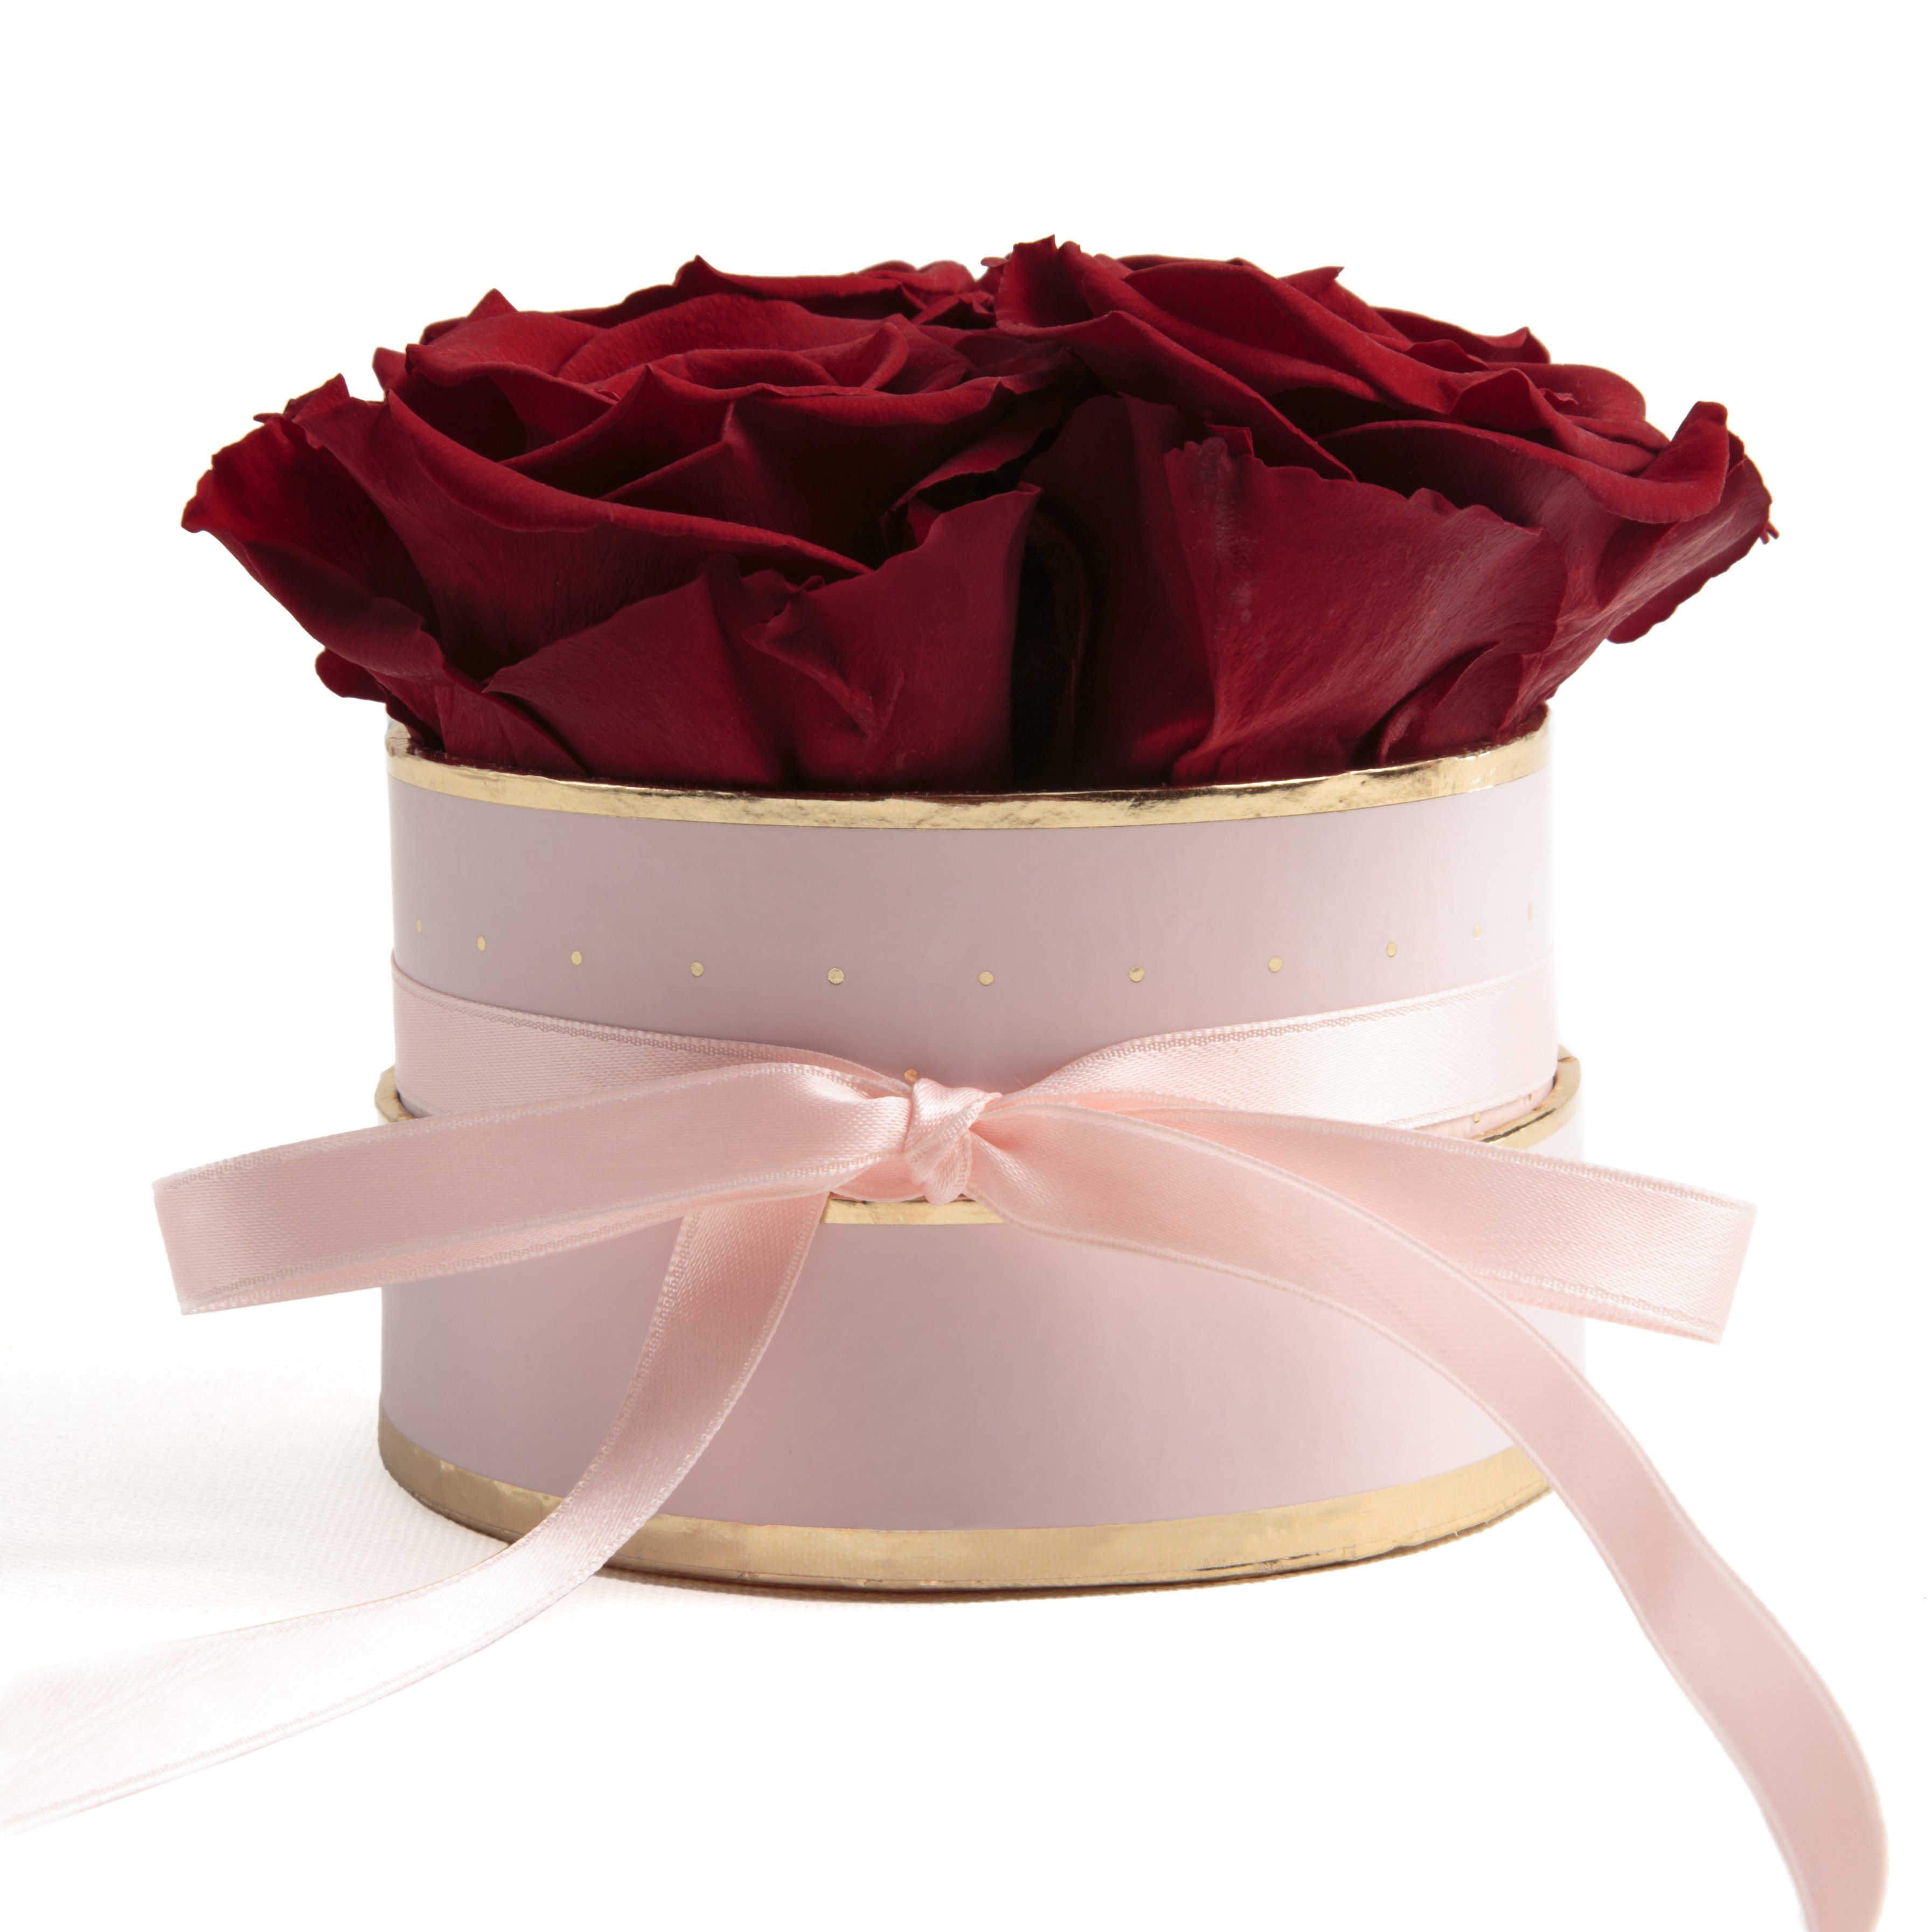 Ruimin Rose Blumen Jahrestag Geschenke Große Vergoldete Tauchte voll 24k Rose personalisierte Geschenke